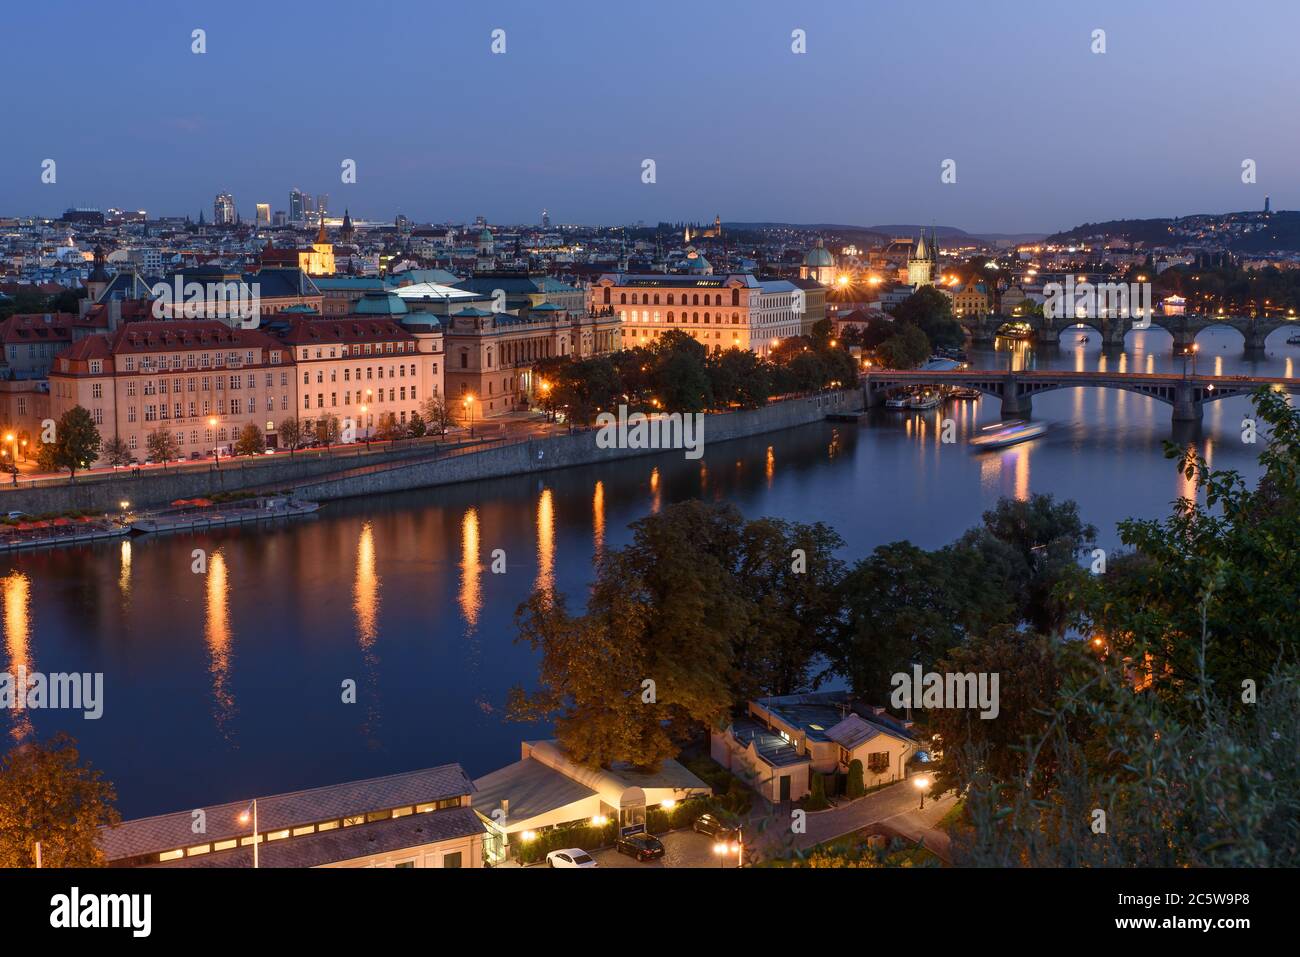 Vue nocturne sur la Vltava et la vieille ville de Prague, République tchèque Banque D'Images